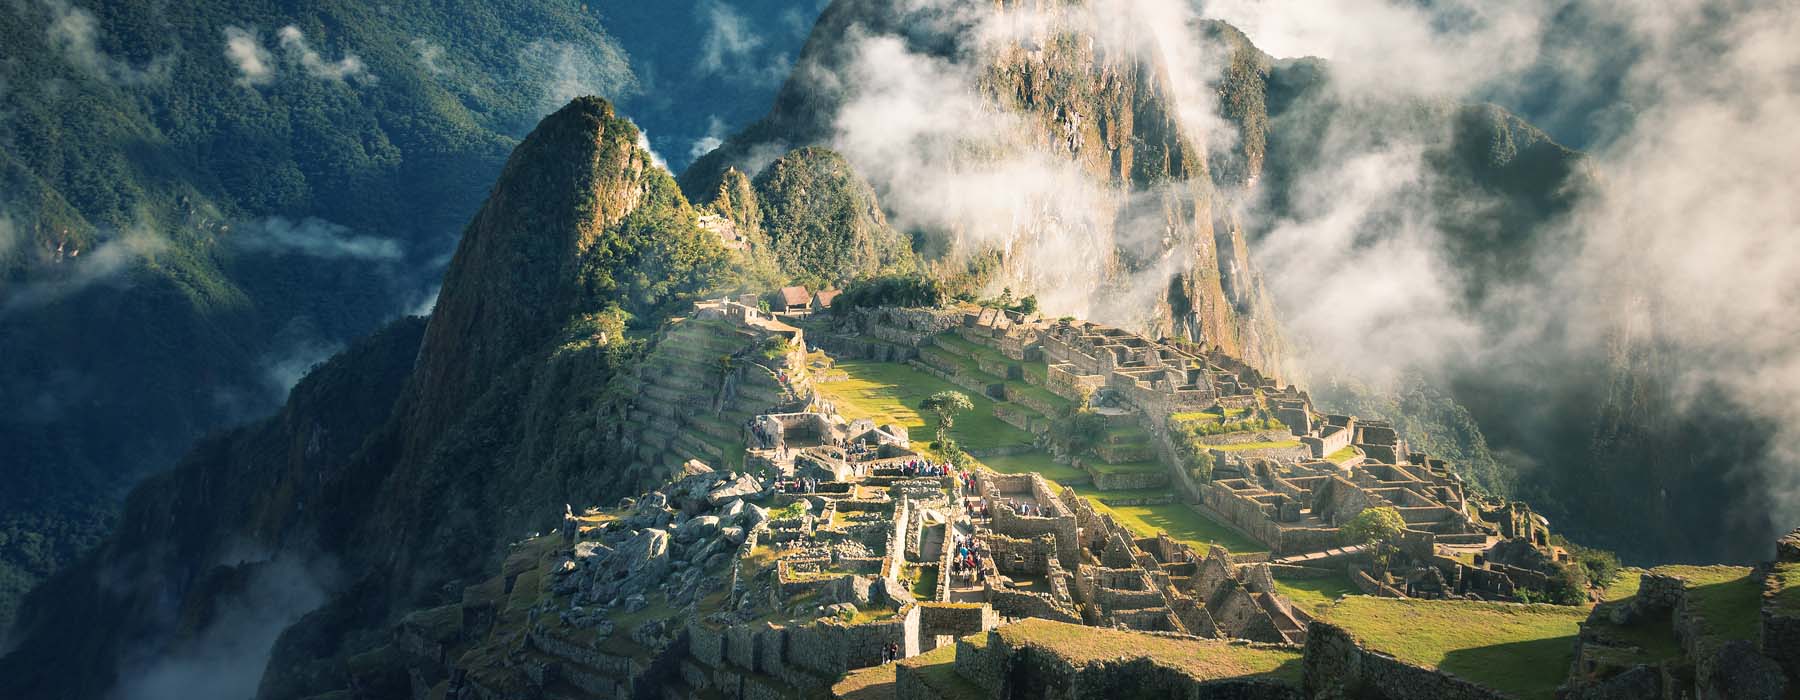 Peru<br class="hidden-md hidden-lg" /> Winter Sun Holidays